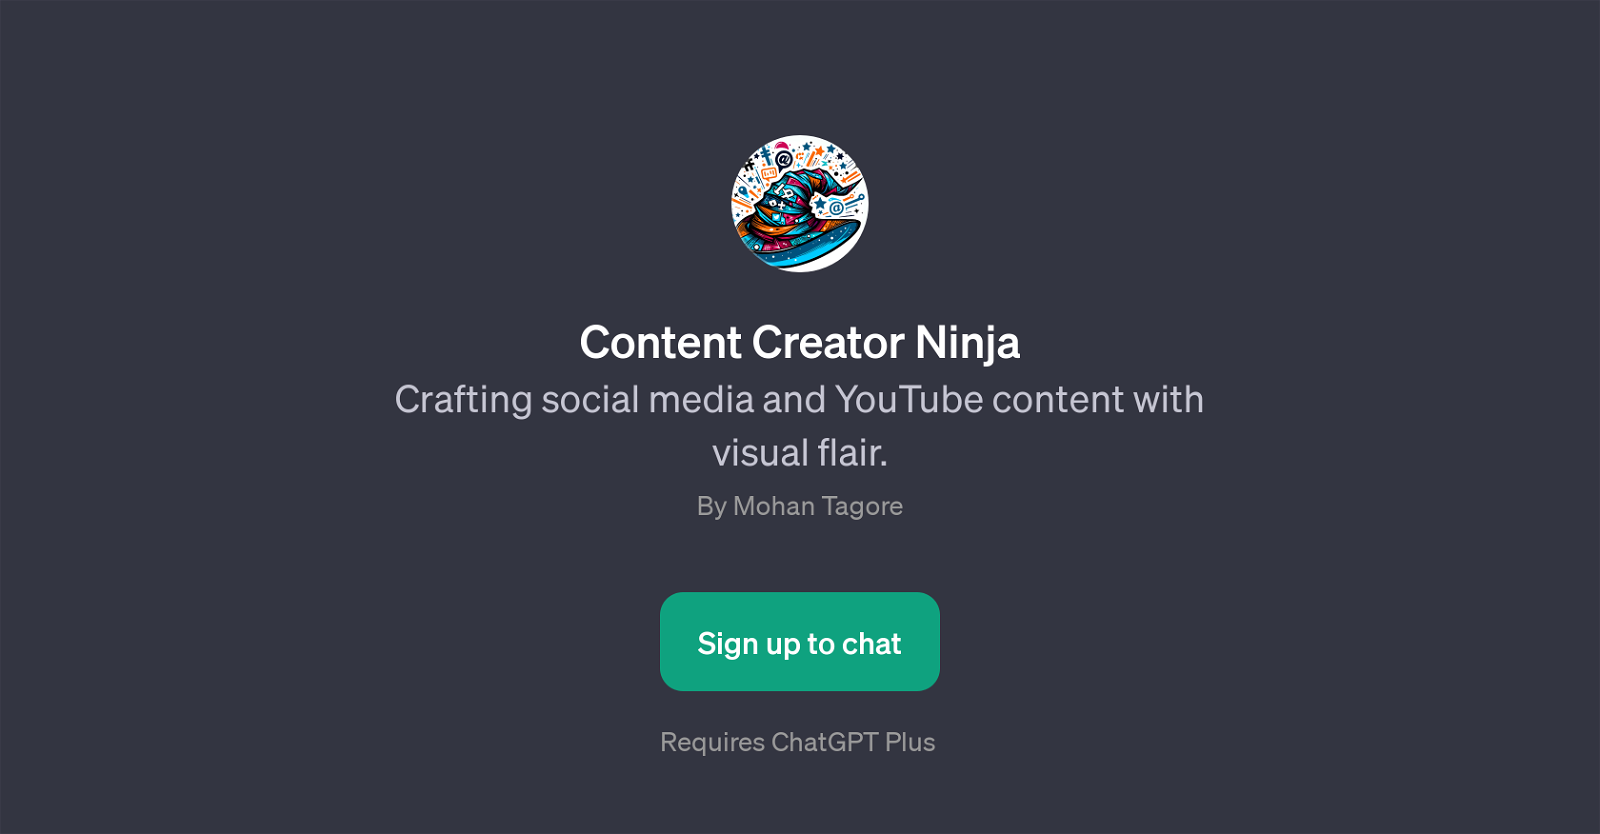 Content Creator Ninja website